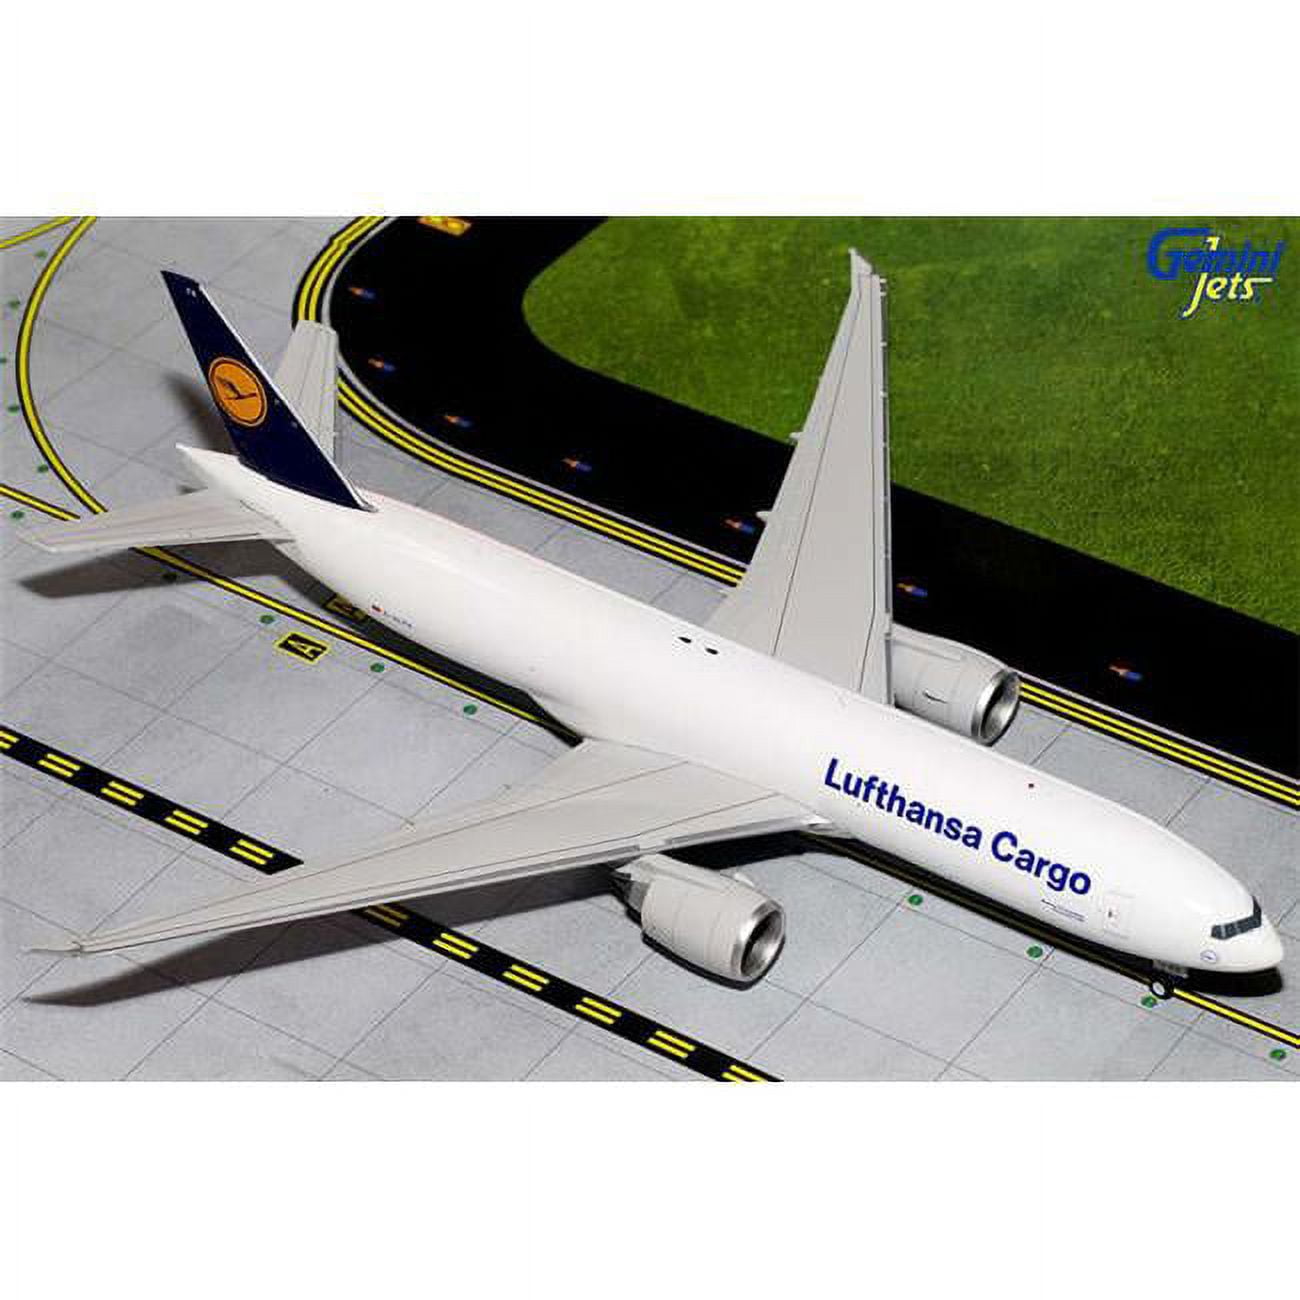 Lufthansa Cargo 777f 1-200 Registration No D-alfa